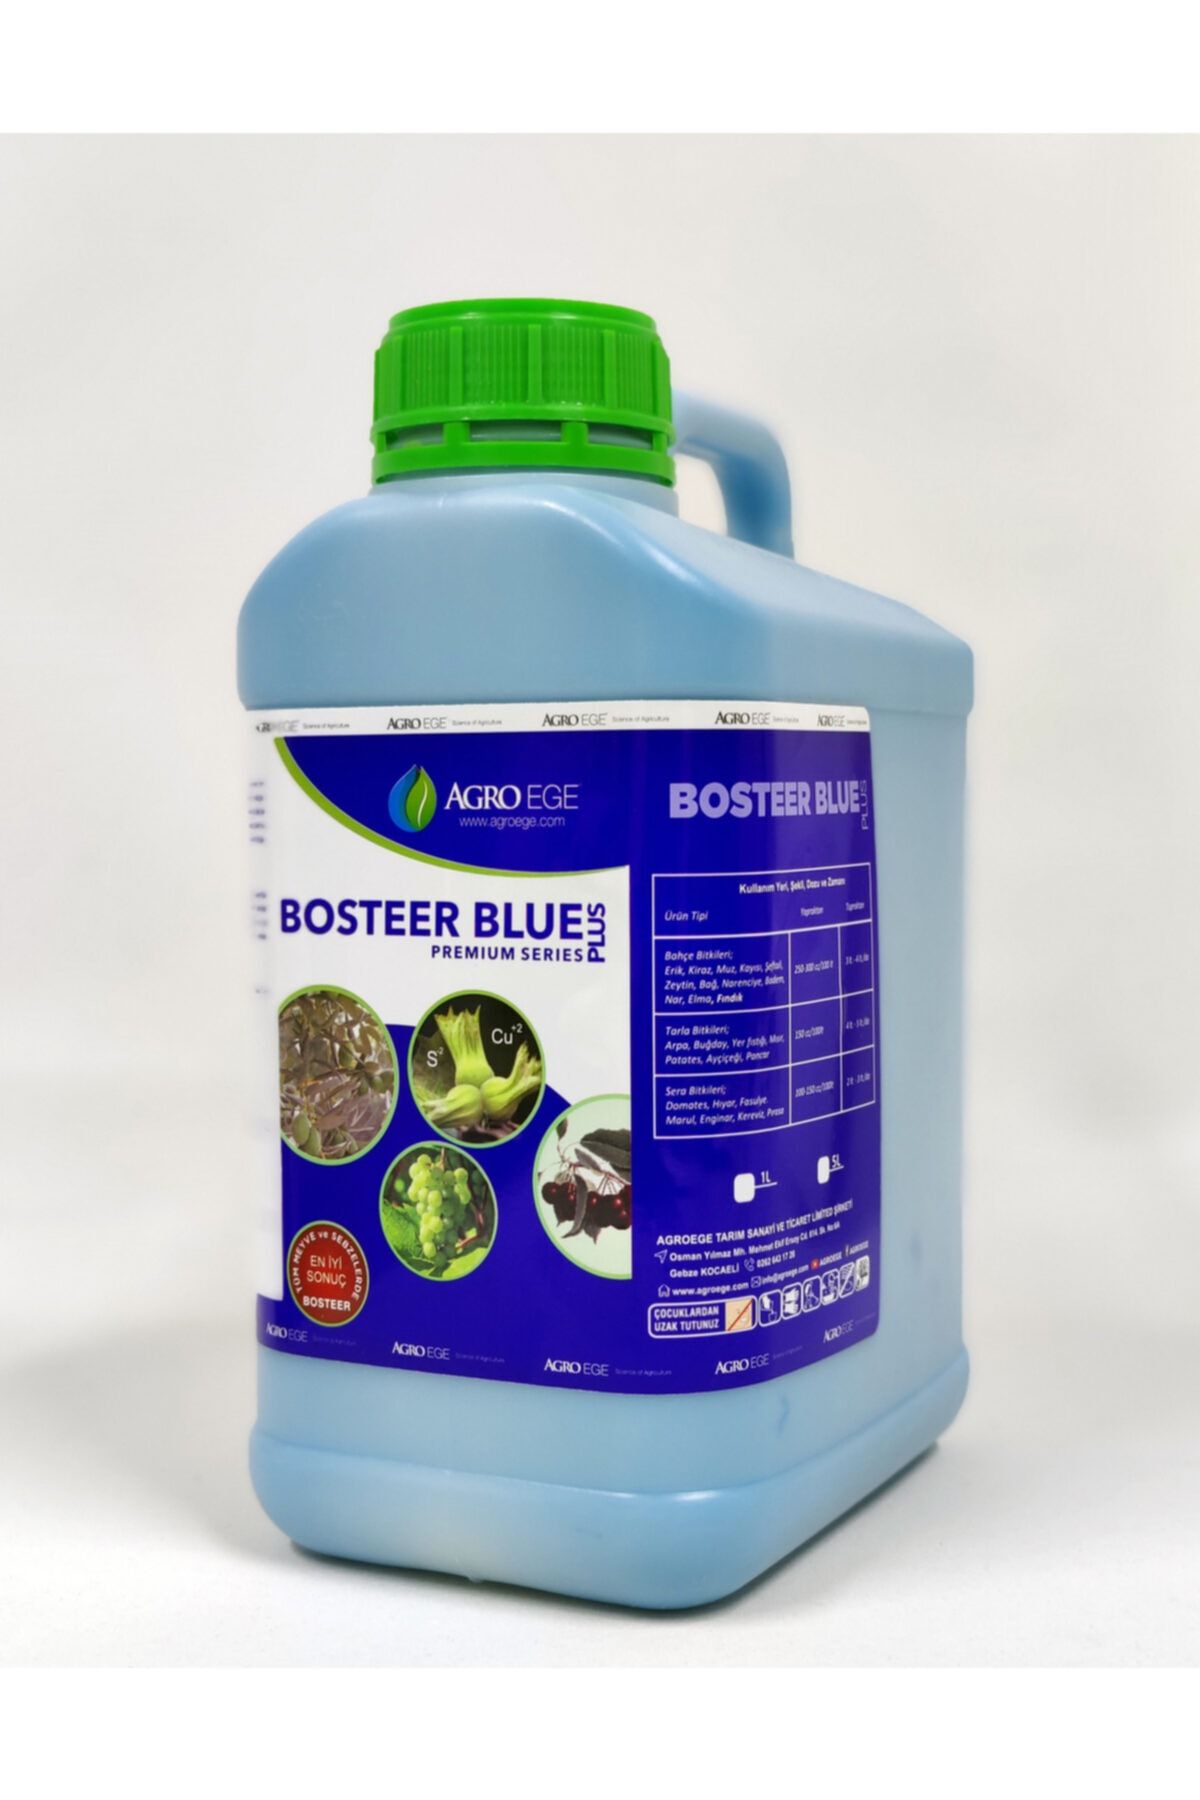 AGROEGE Kış Bakırı Bosteer Blue  Kükürt + Bakır  5 Litre  7,5 kg